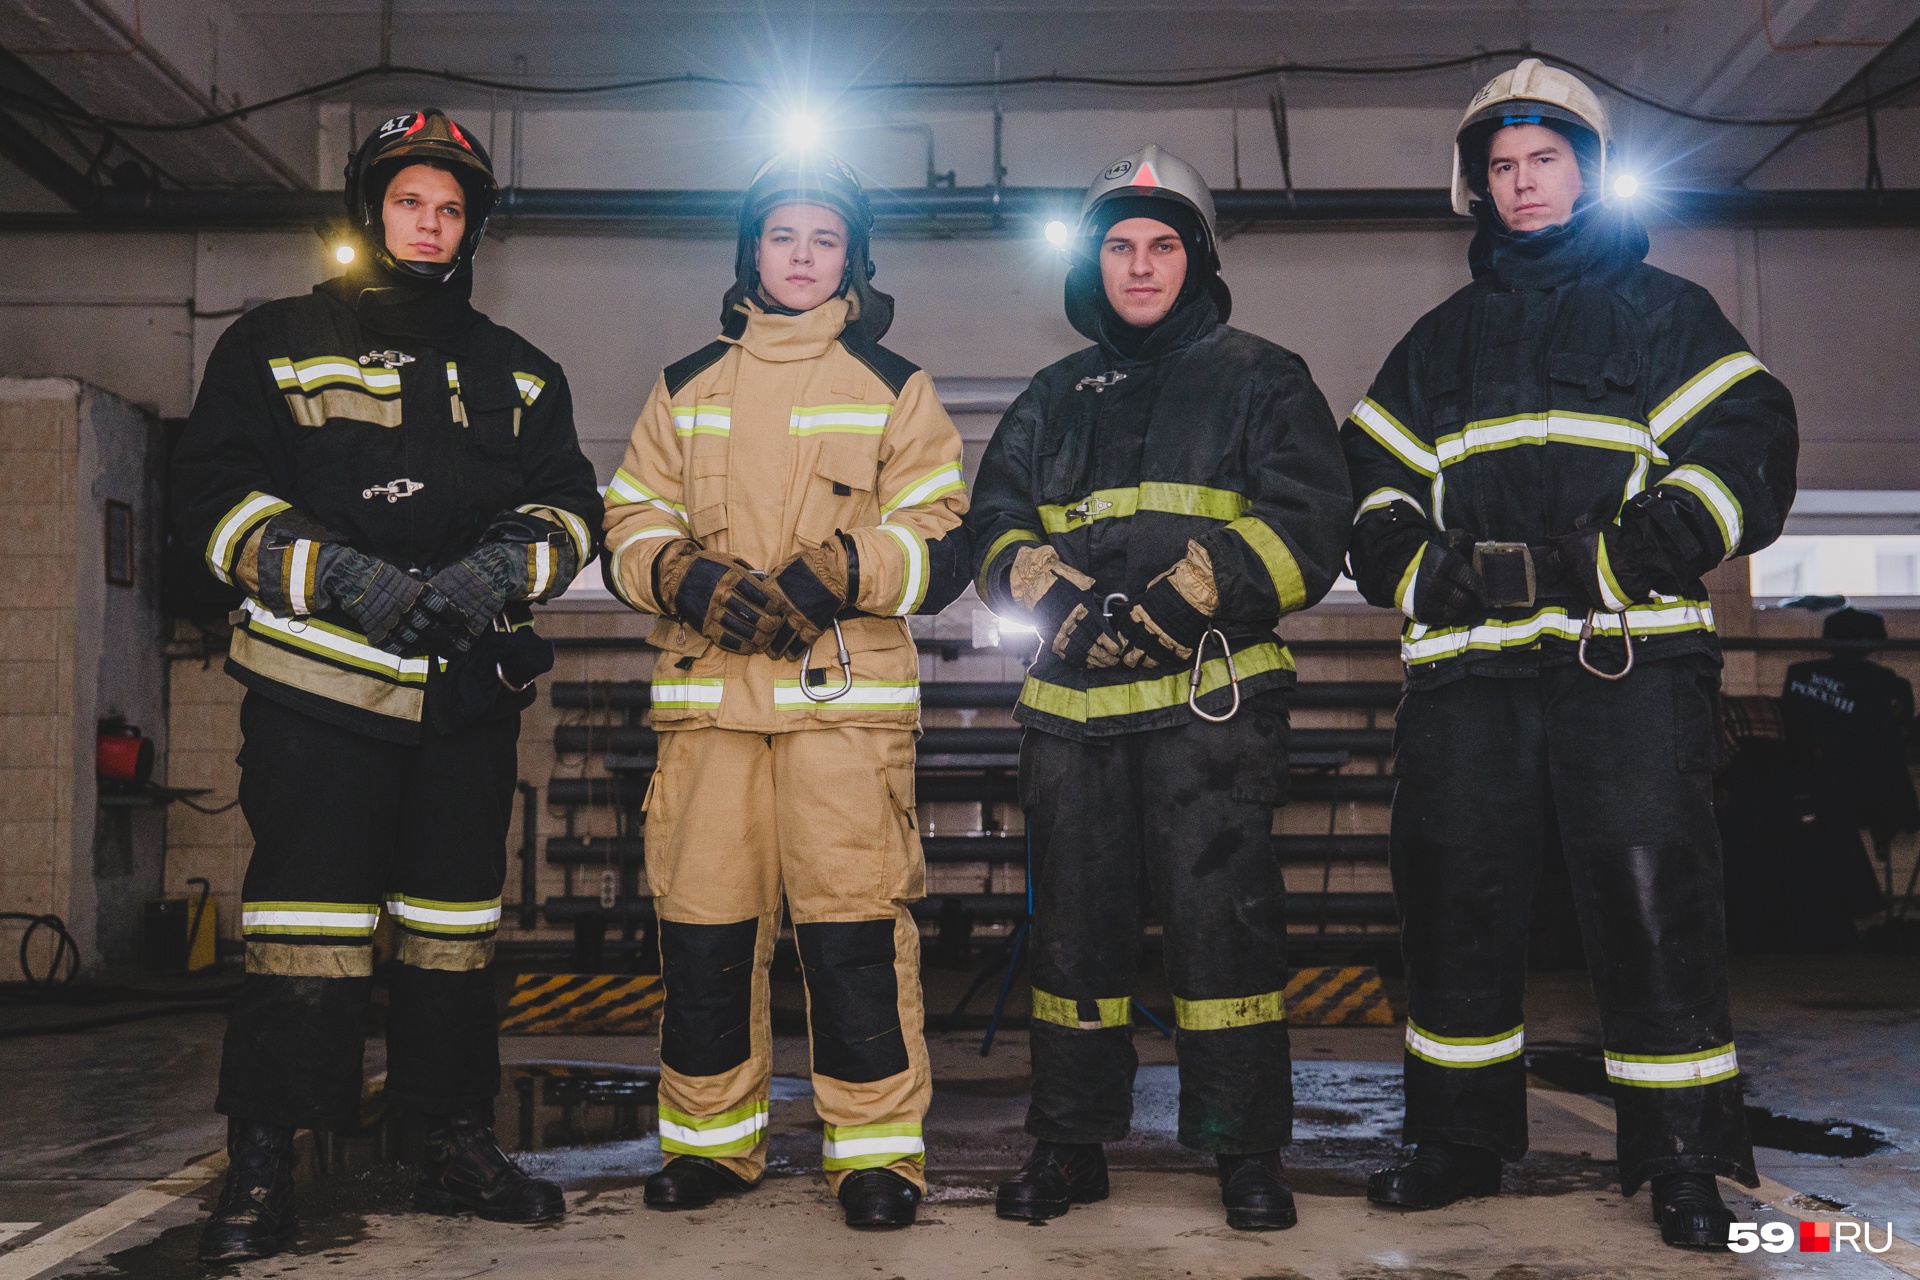 Для съемок ребята приехали в своих «боевках» — одежда пожарных, которая защищает от огня